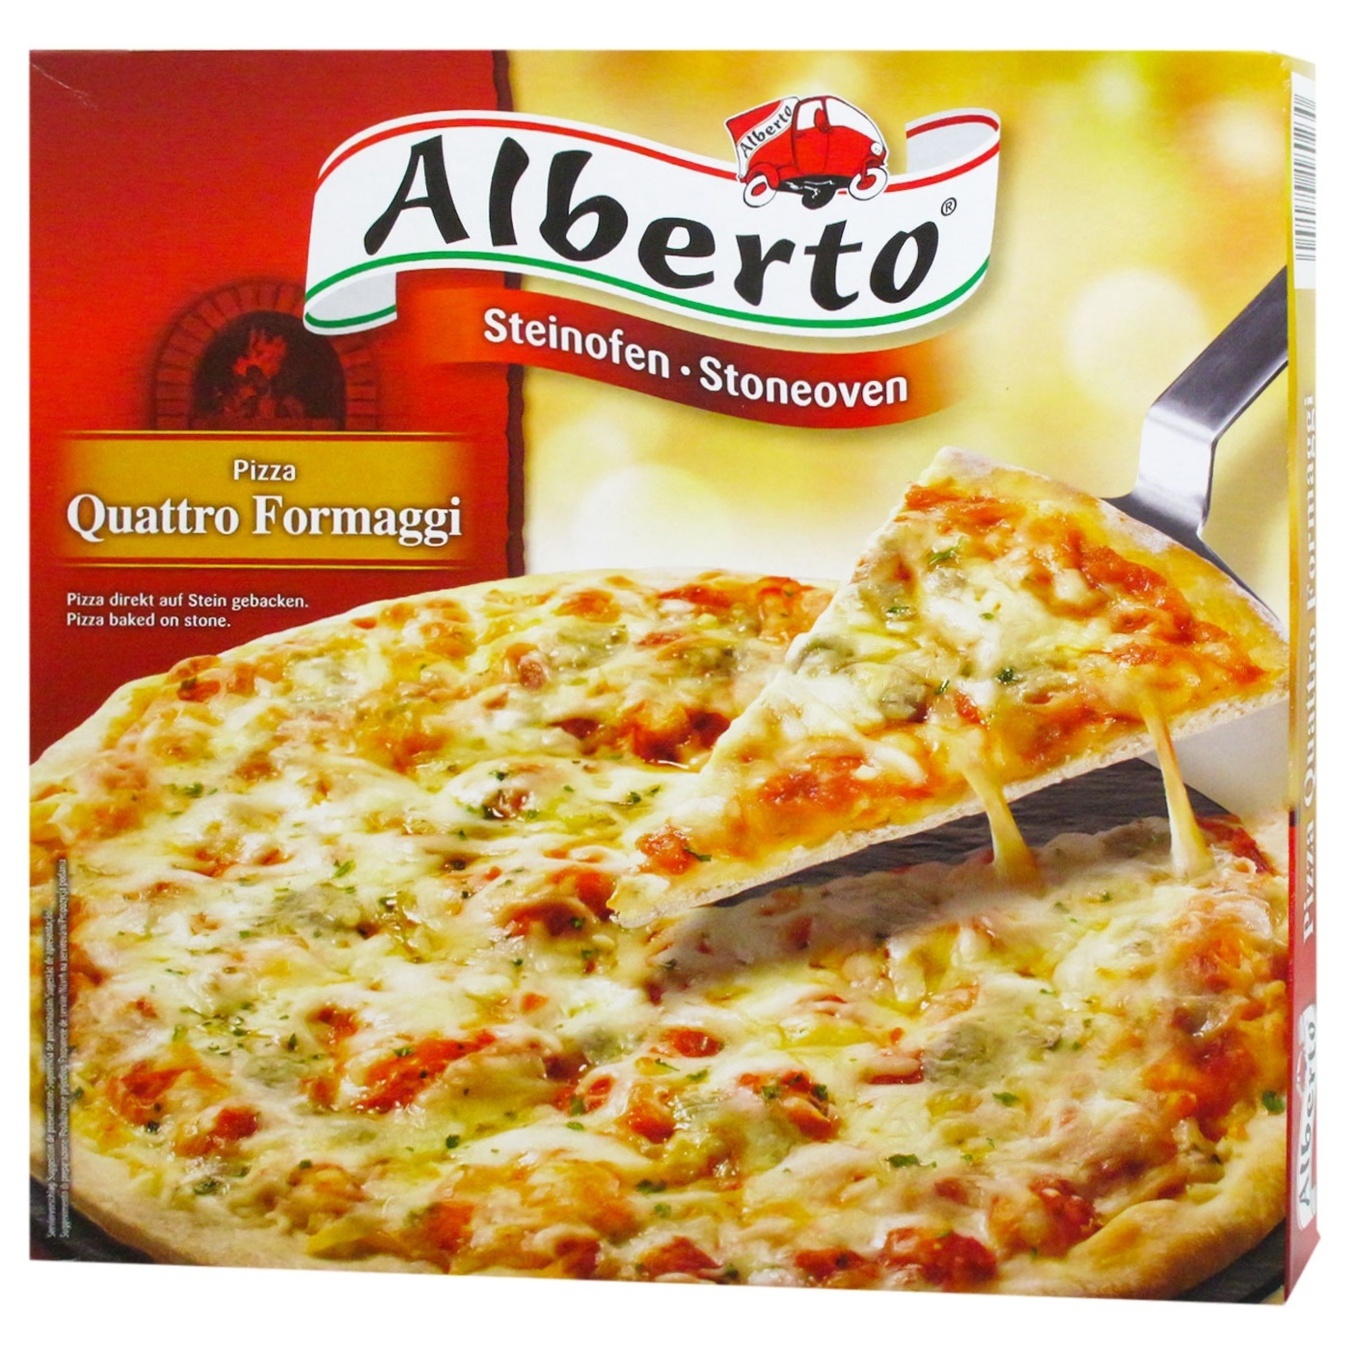 Піца 4 сира Alberto запечена в кам’яній печі 320г